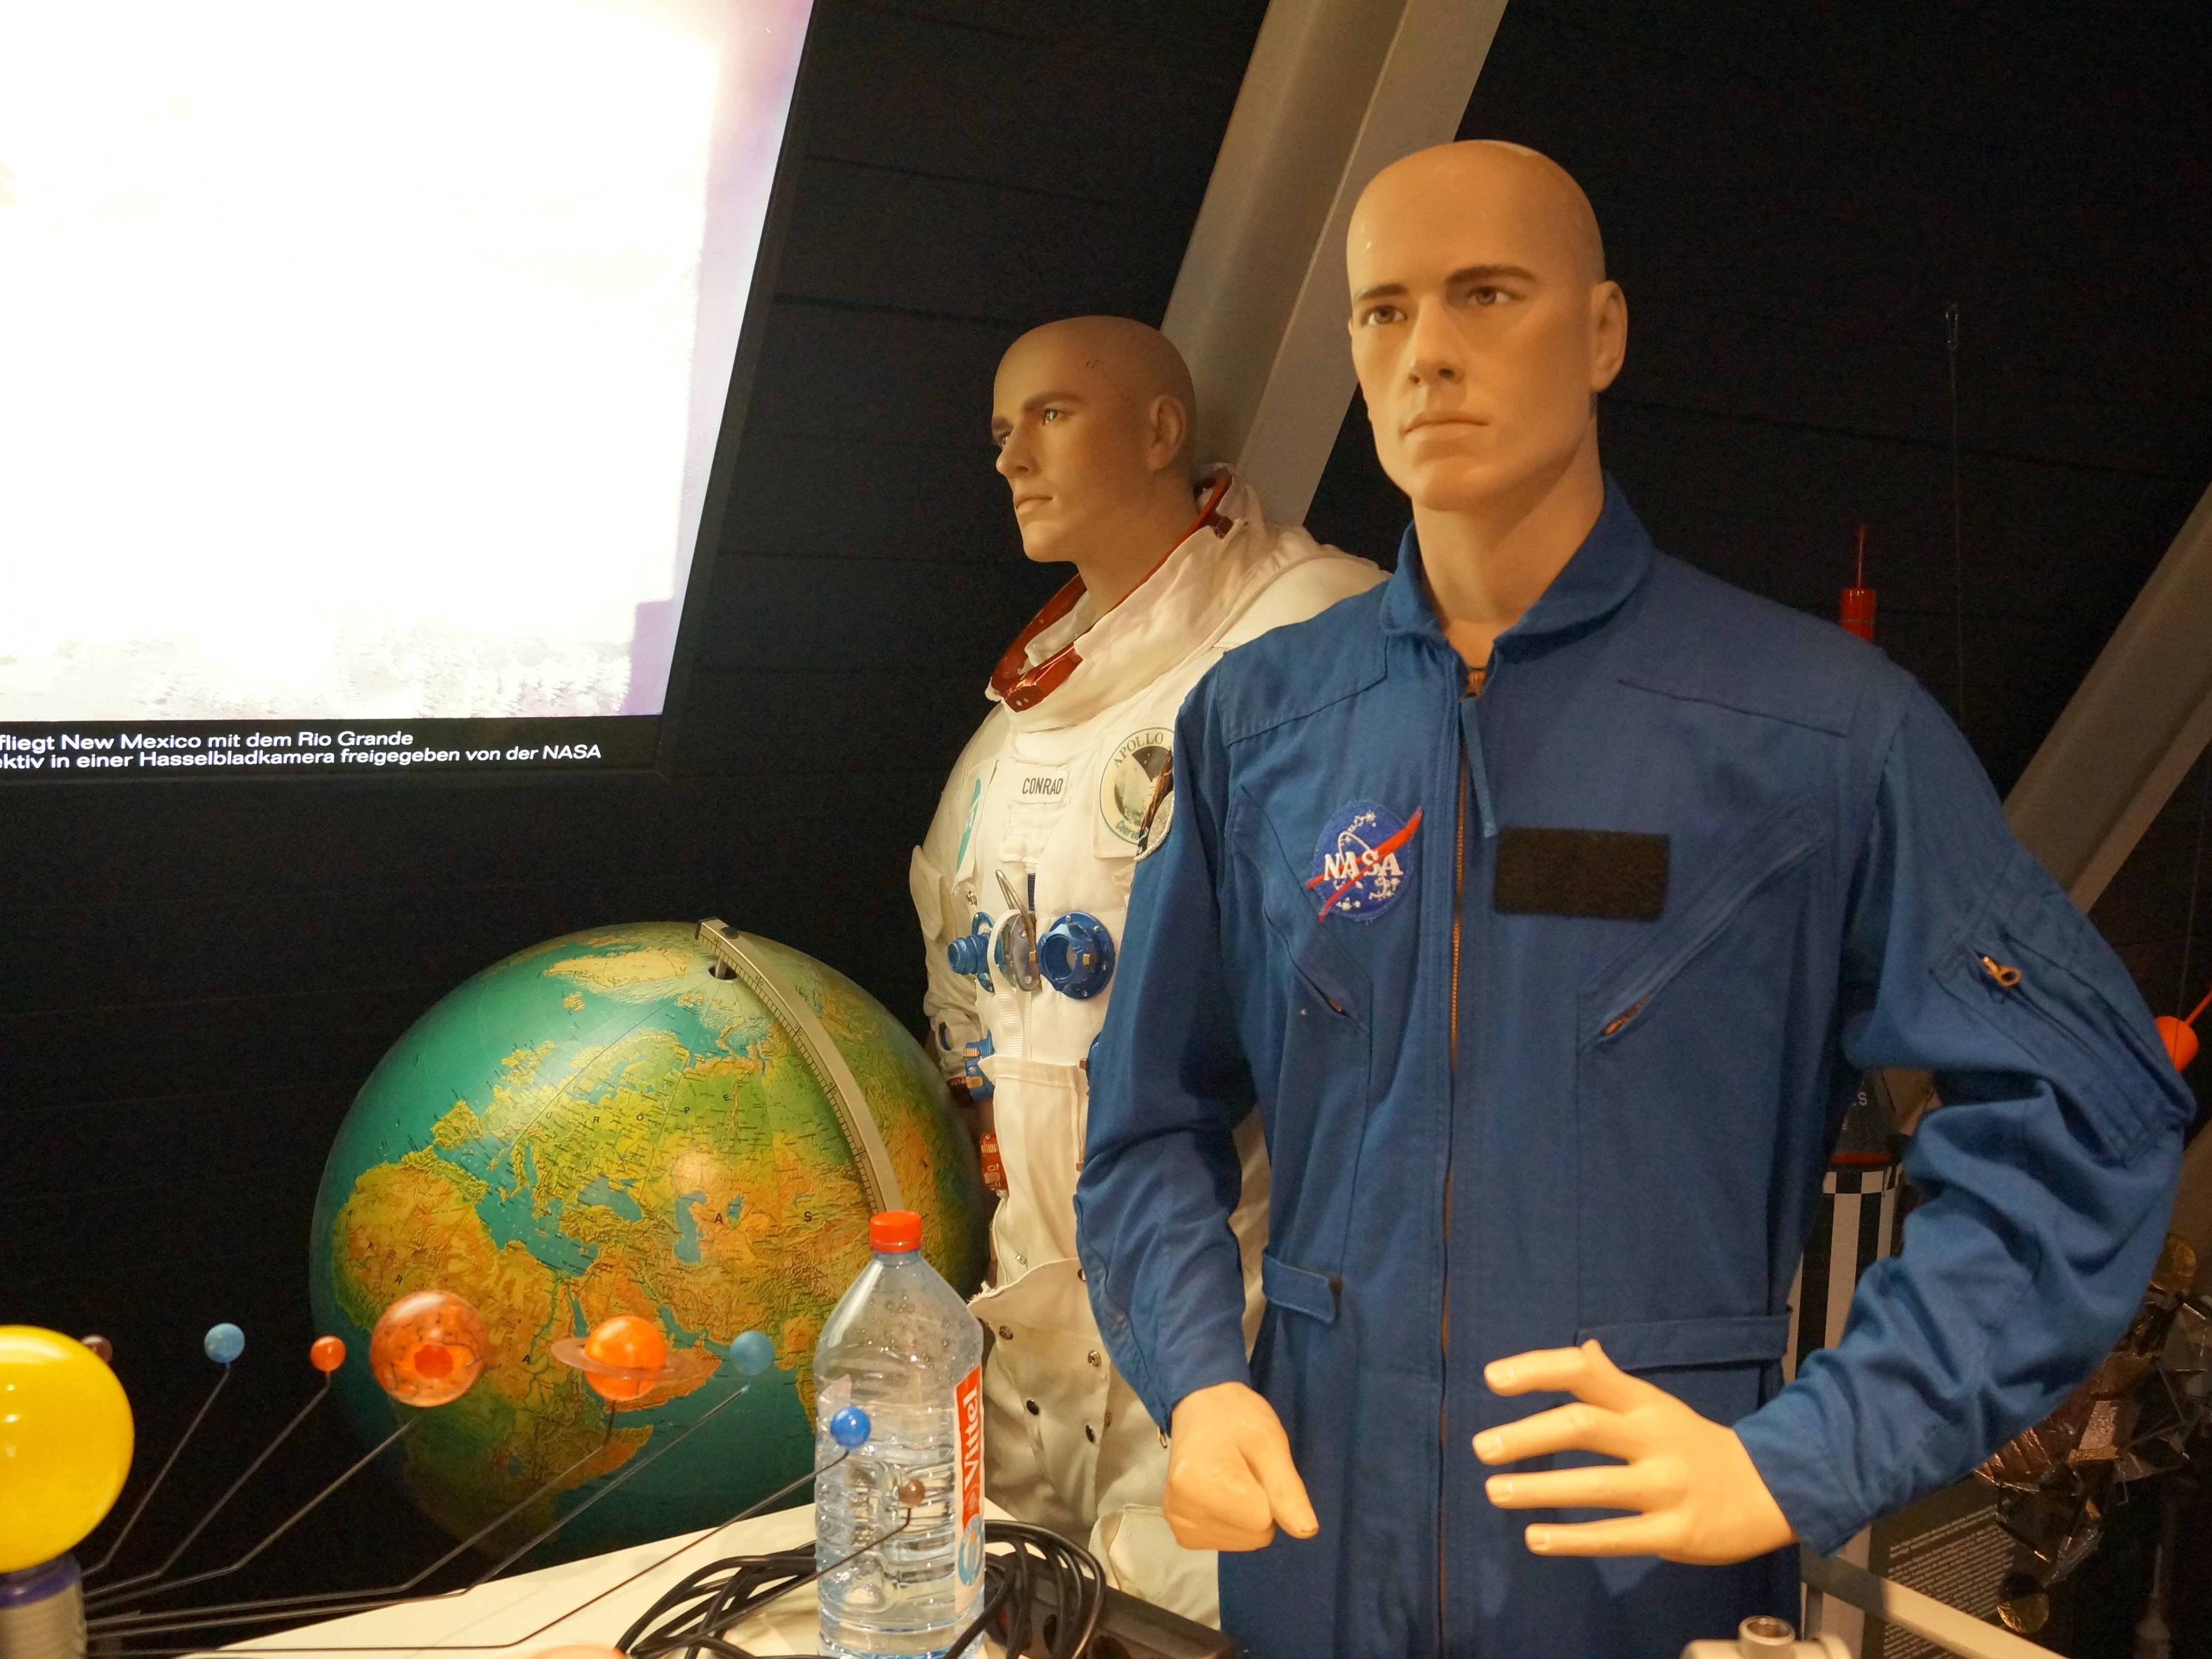 Δύο διαστημικές στολές από τη NASA φαίνονται στην εικόνα